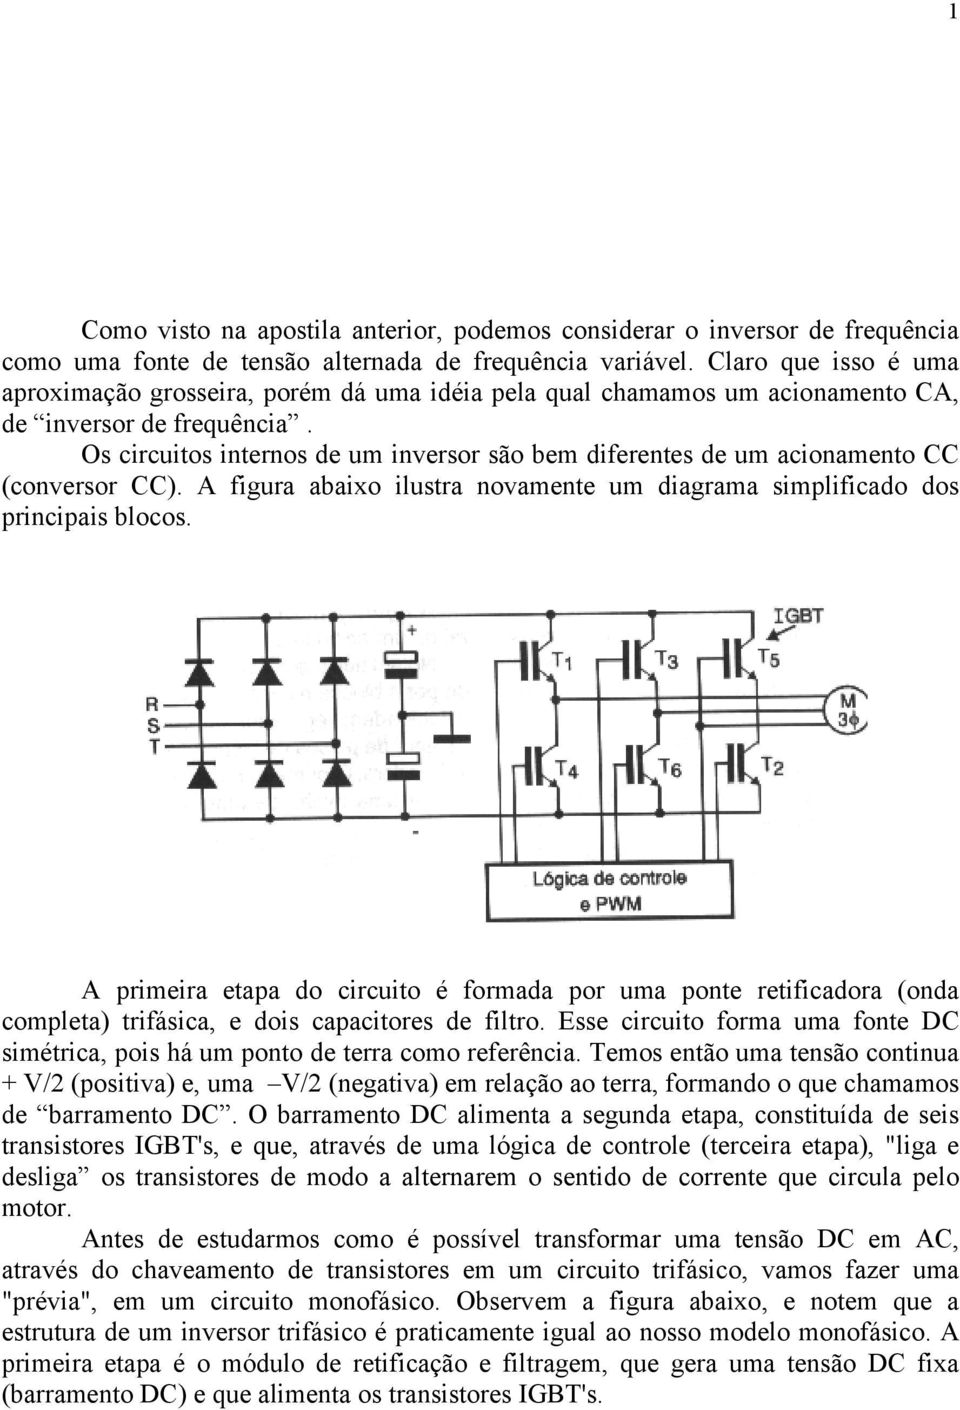 Os circuitos internos de um inversor são bem diferentes de um acionamento CC (conversor CC). A figura abaixo ilustra novamente um diagrama simplificado dos principais blocos.